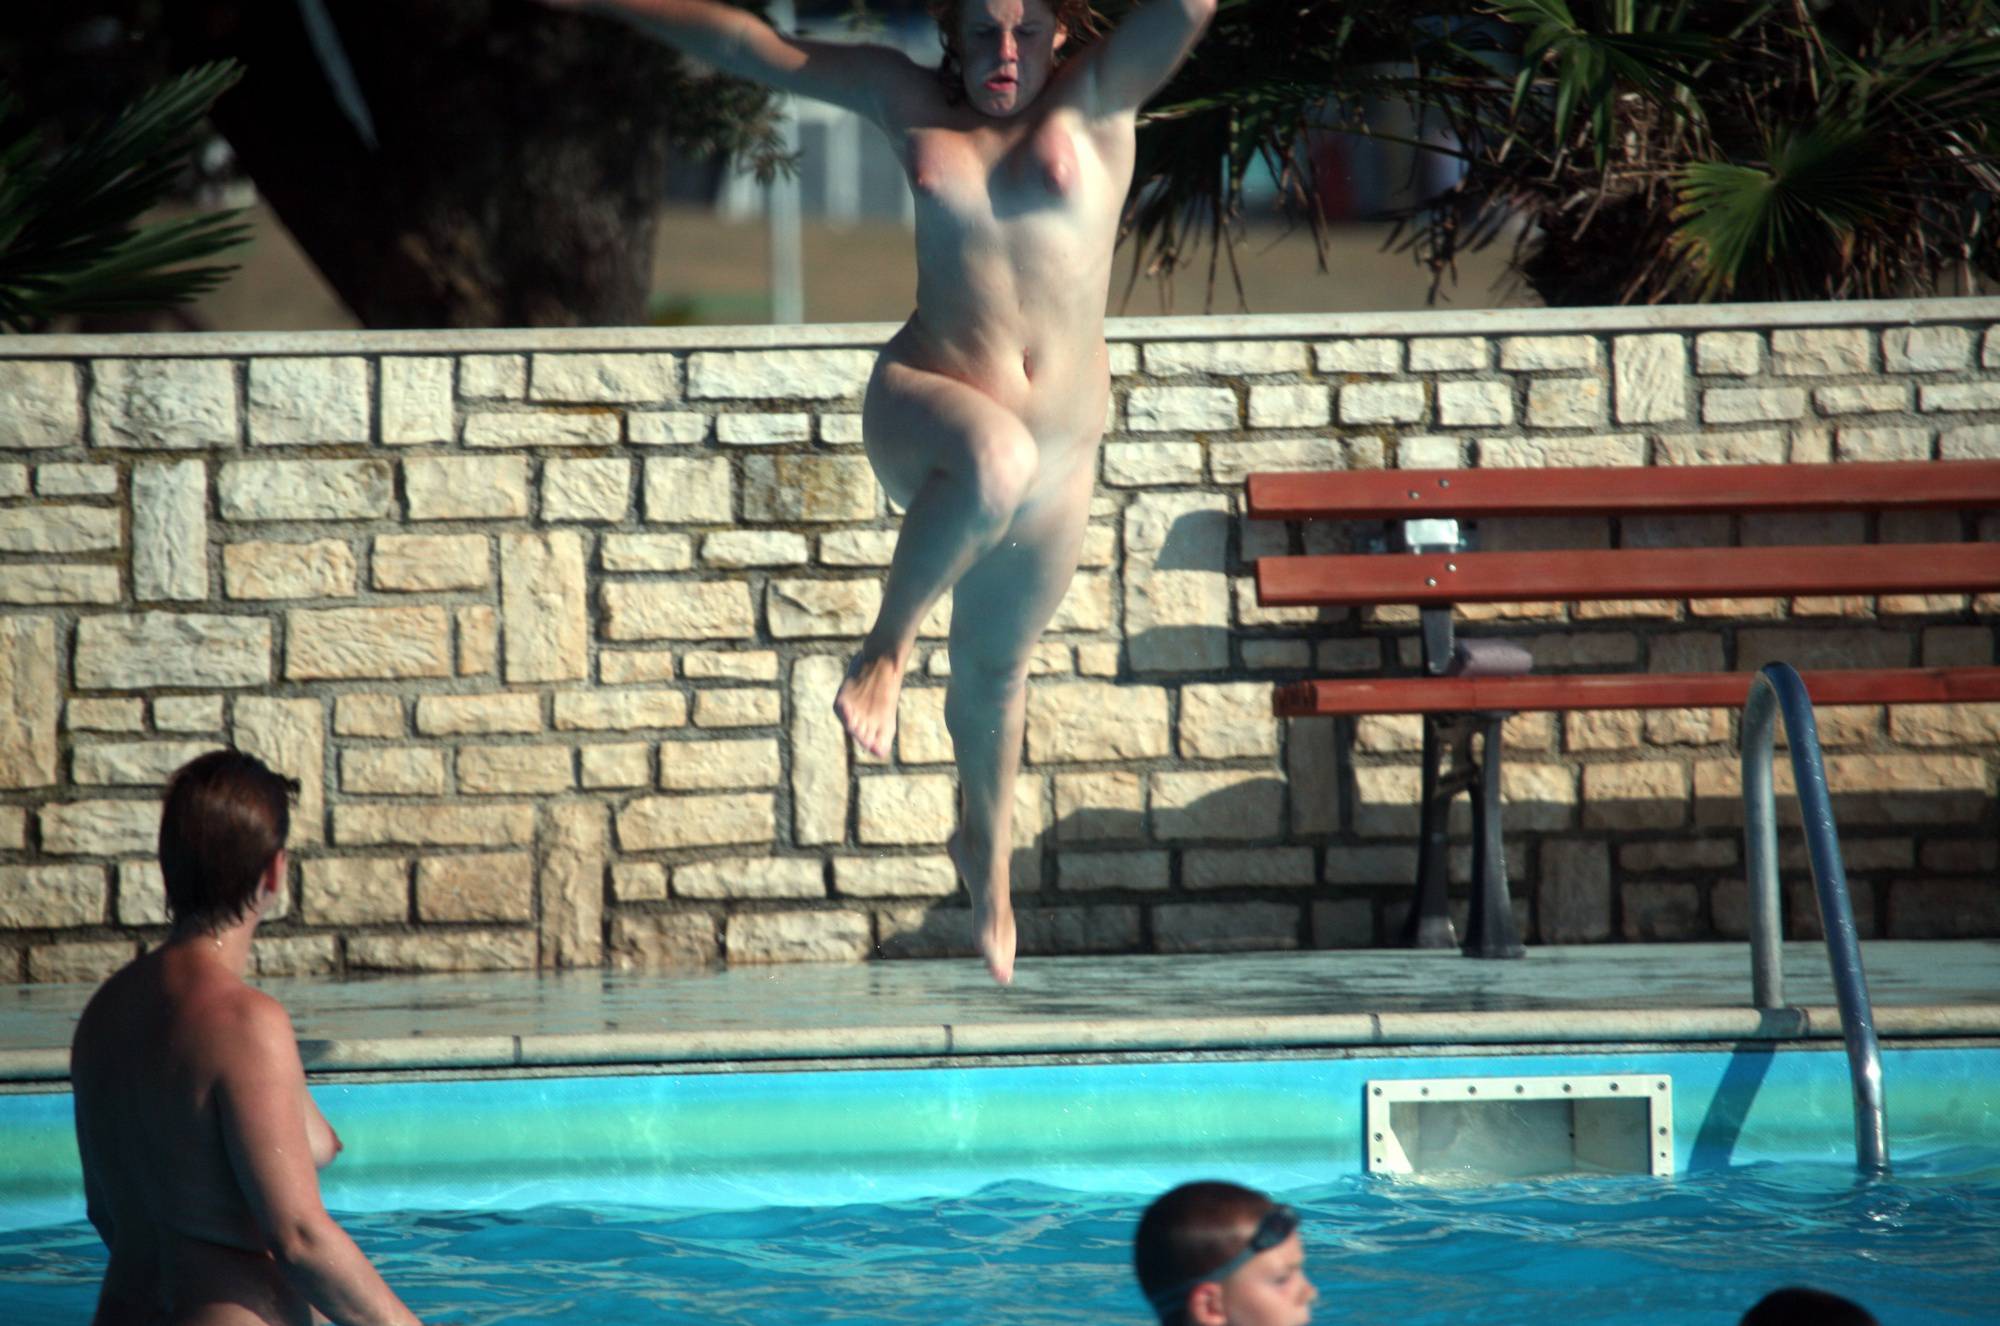 Nudist Pool Jumping Time - 1